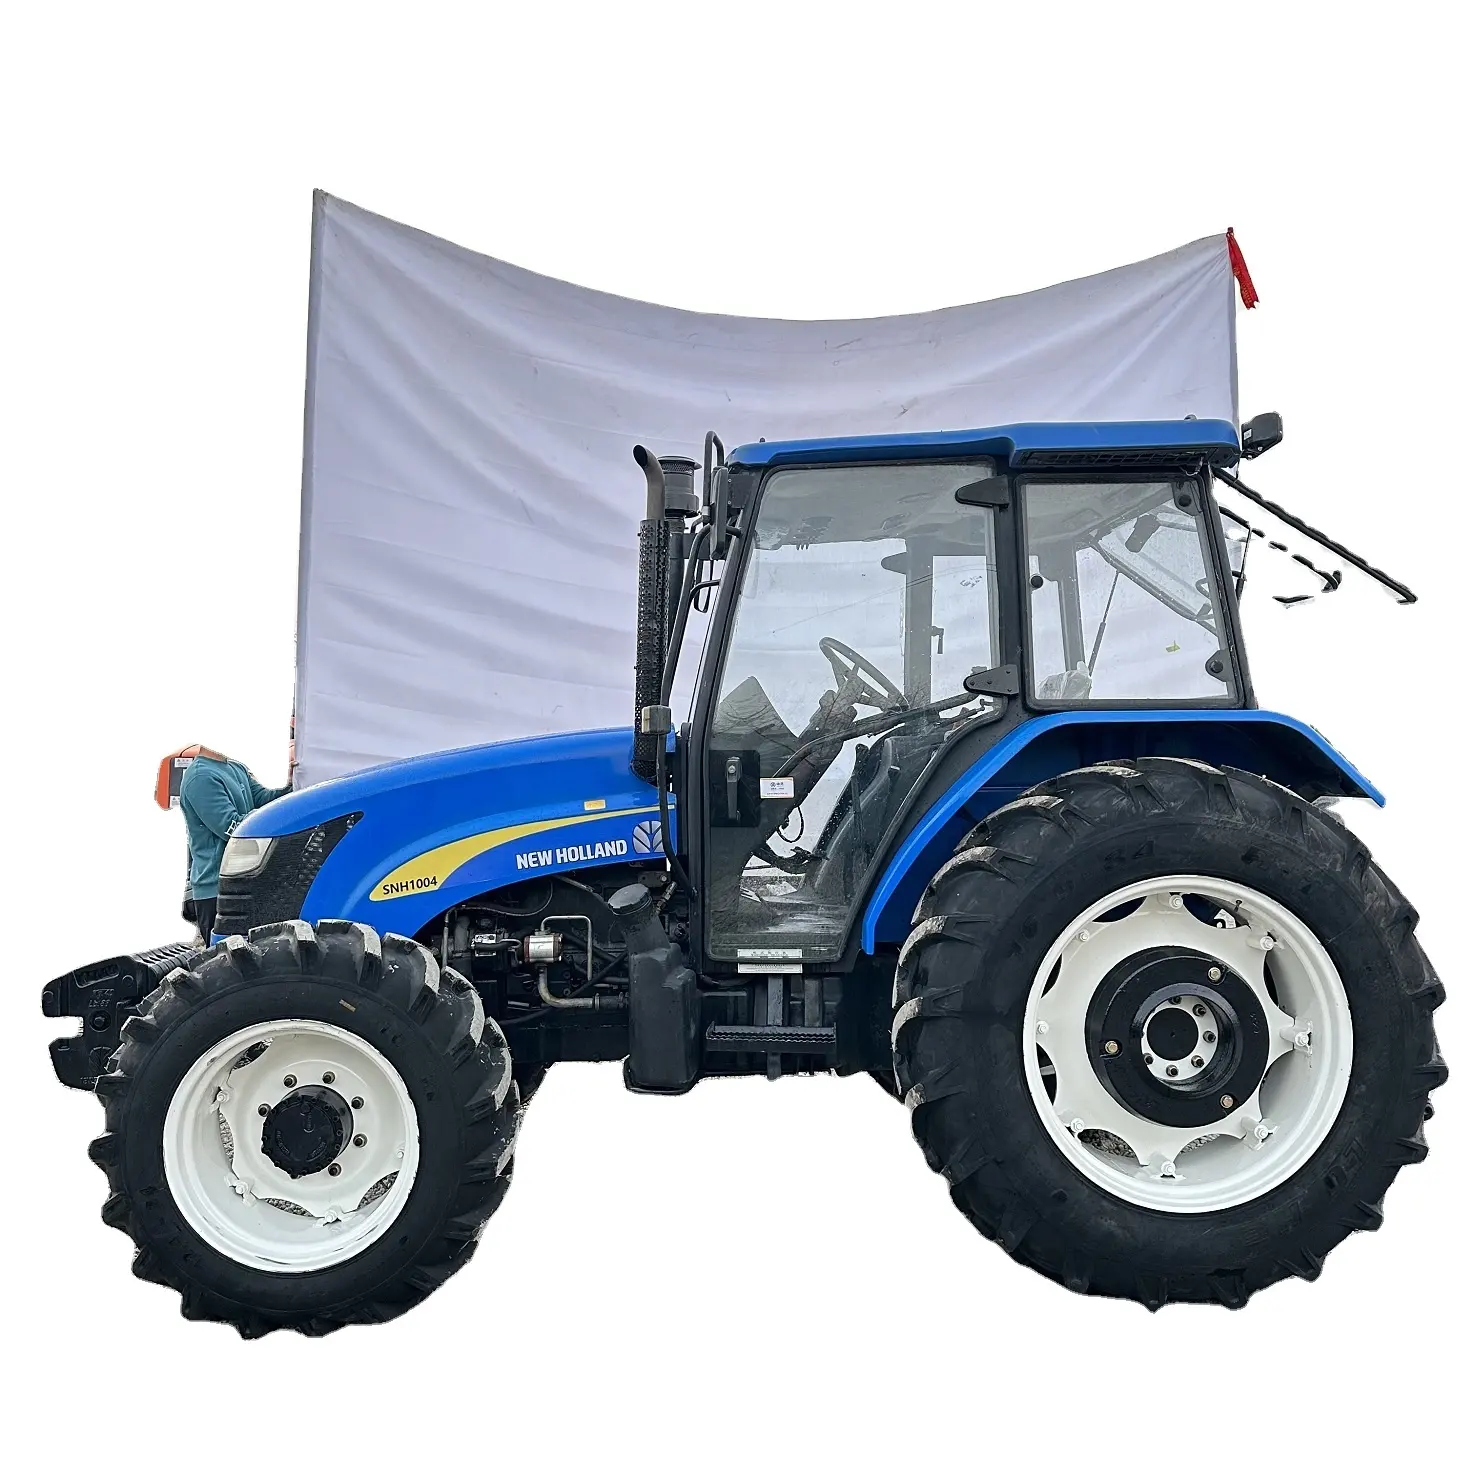 Yeni. Ho.lland SNH1004 satılık çiftlik traktörü ucuz fiyat DEUTZ motor tarım ekipmanları kullanılan tarım traktörleri